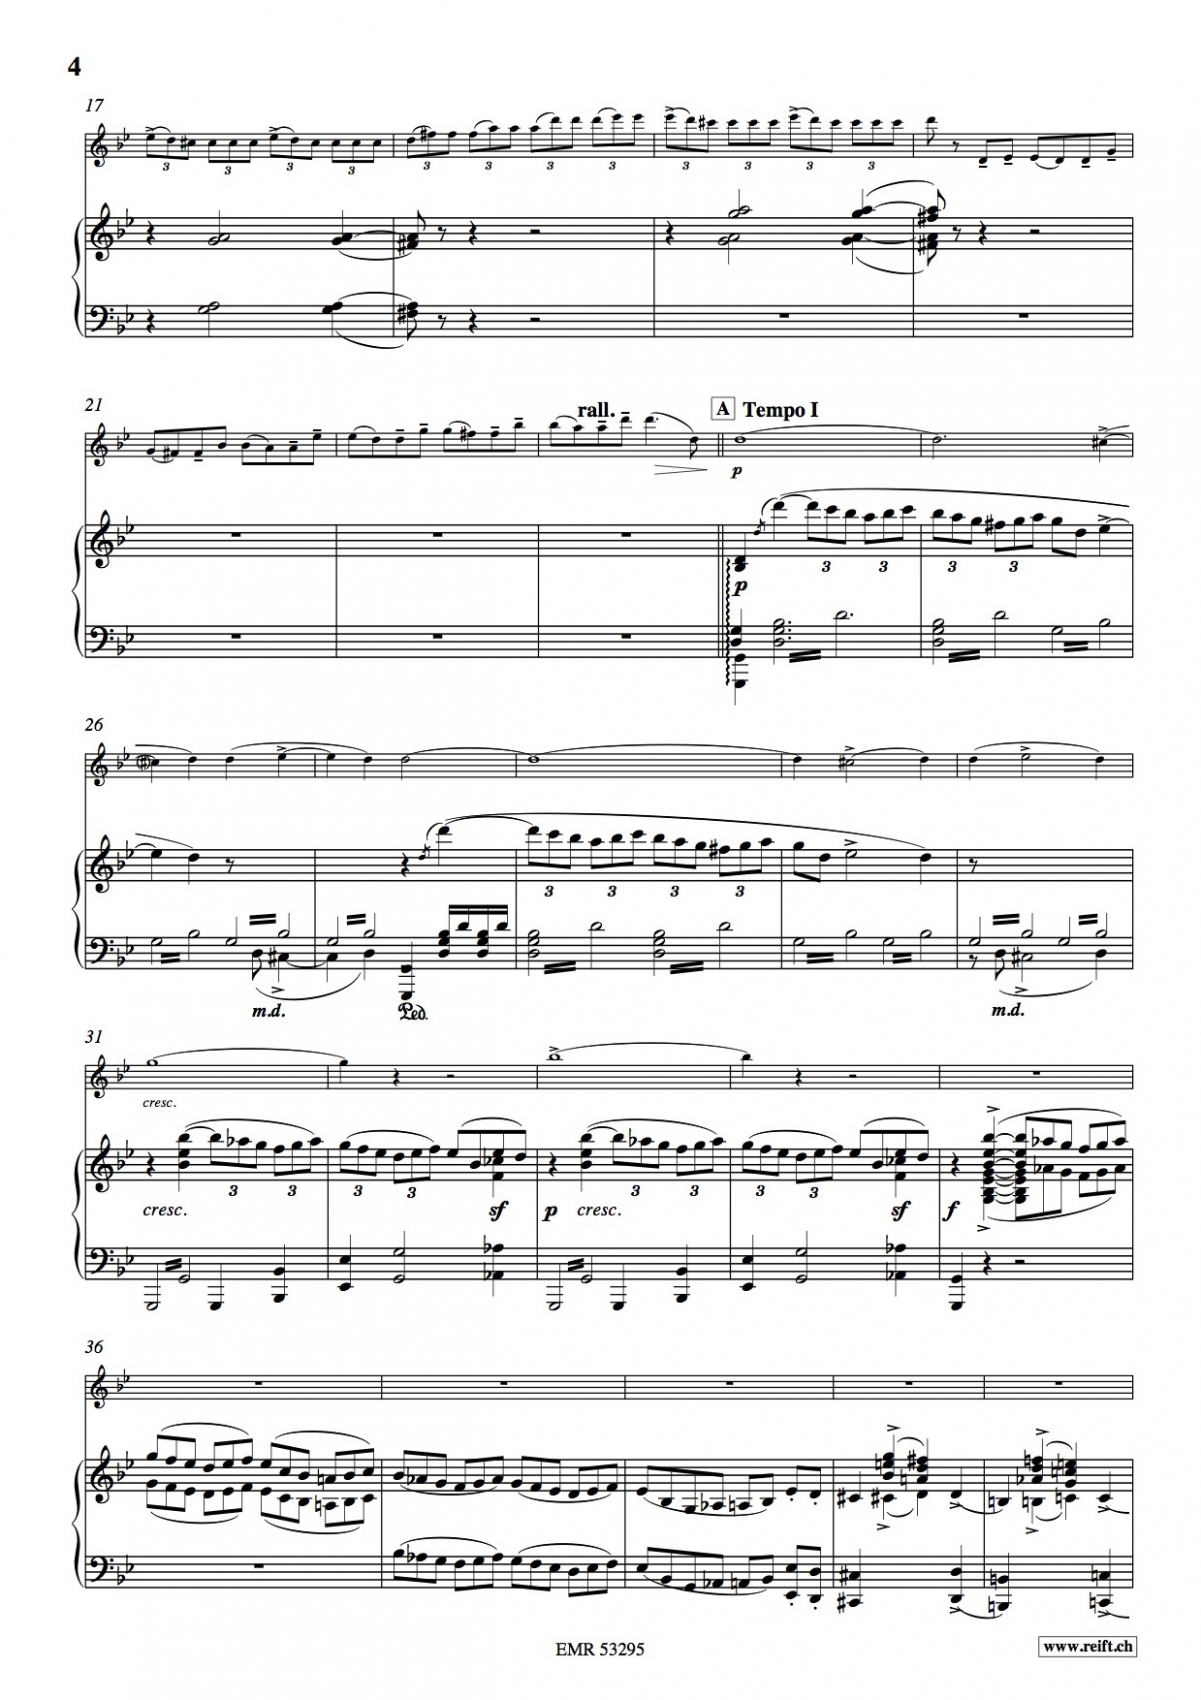 Saint-Saens, C :: Concert in G Minor, Op. 33